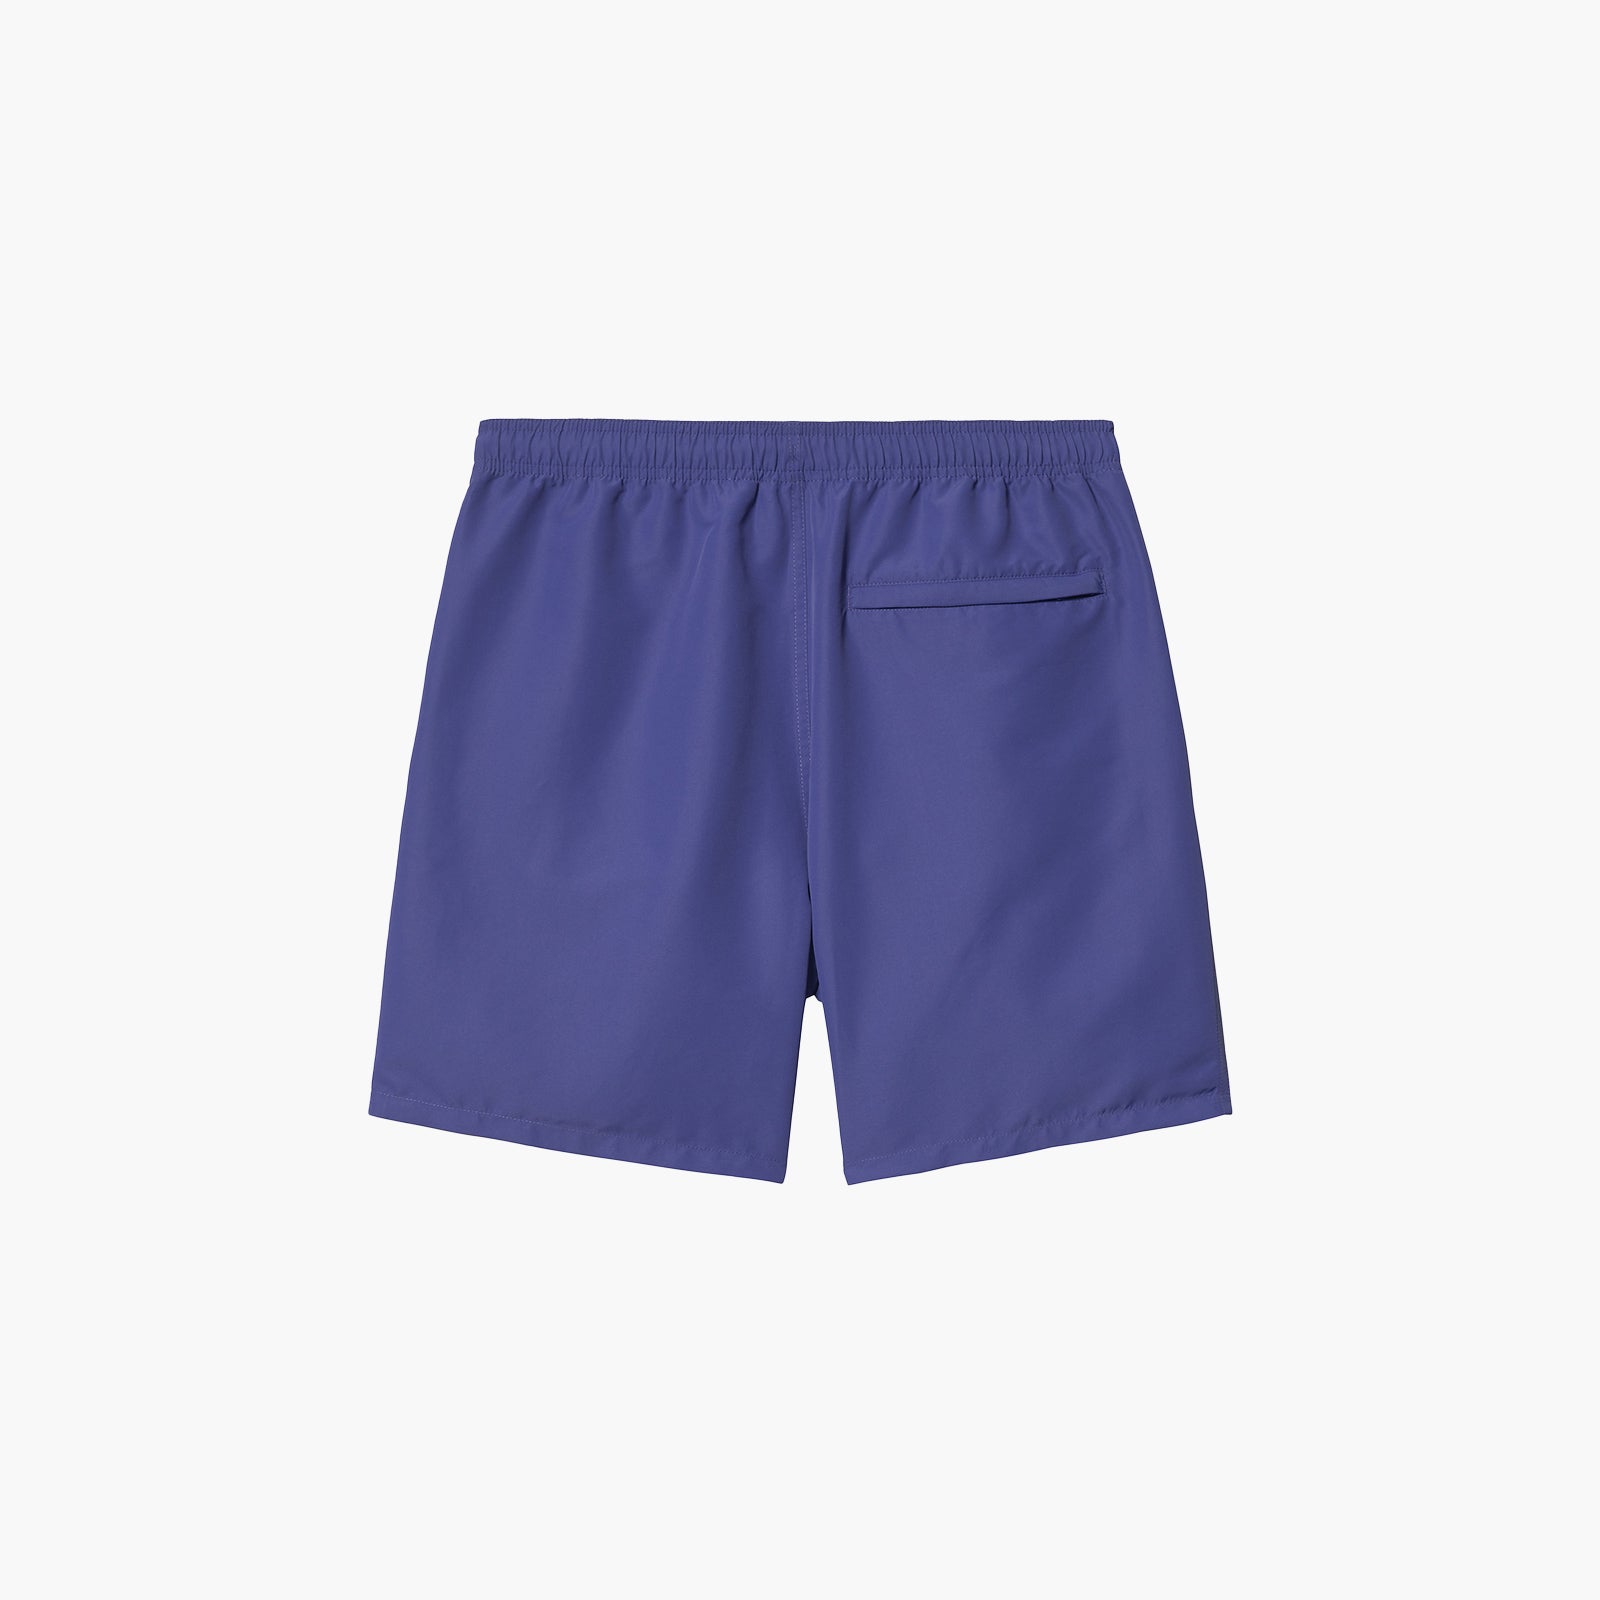 Carhartt WIP Island Swim Trunks-I030059 - 0OK.XX-Purple-X-Large-SUEDE Store